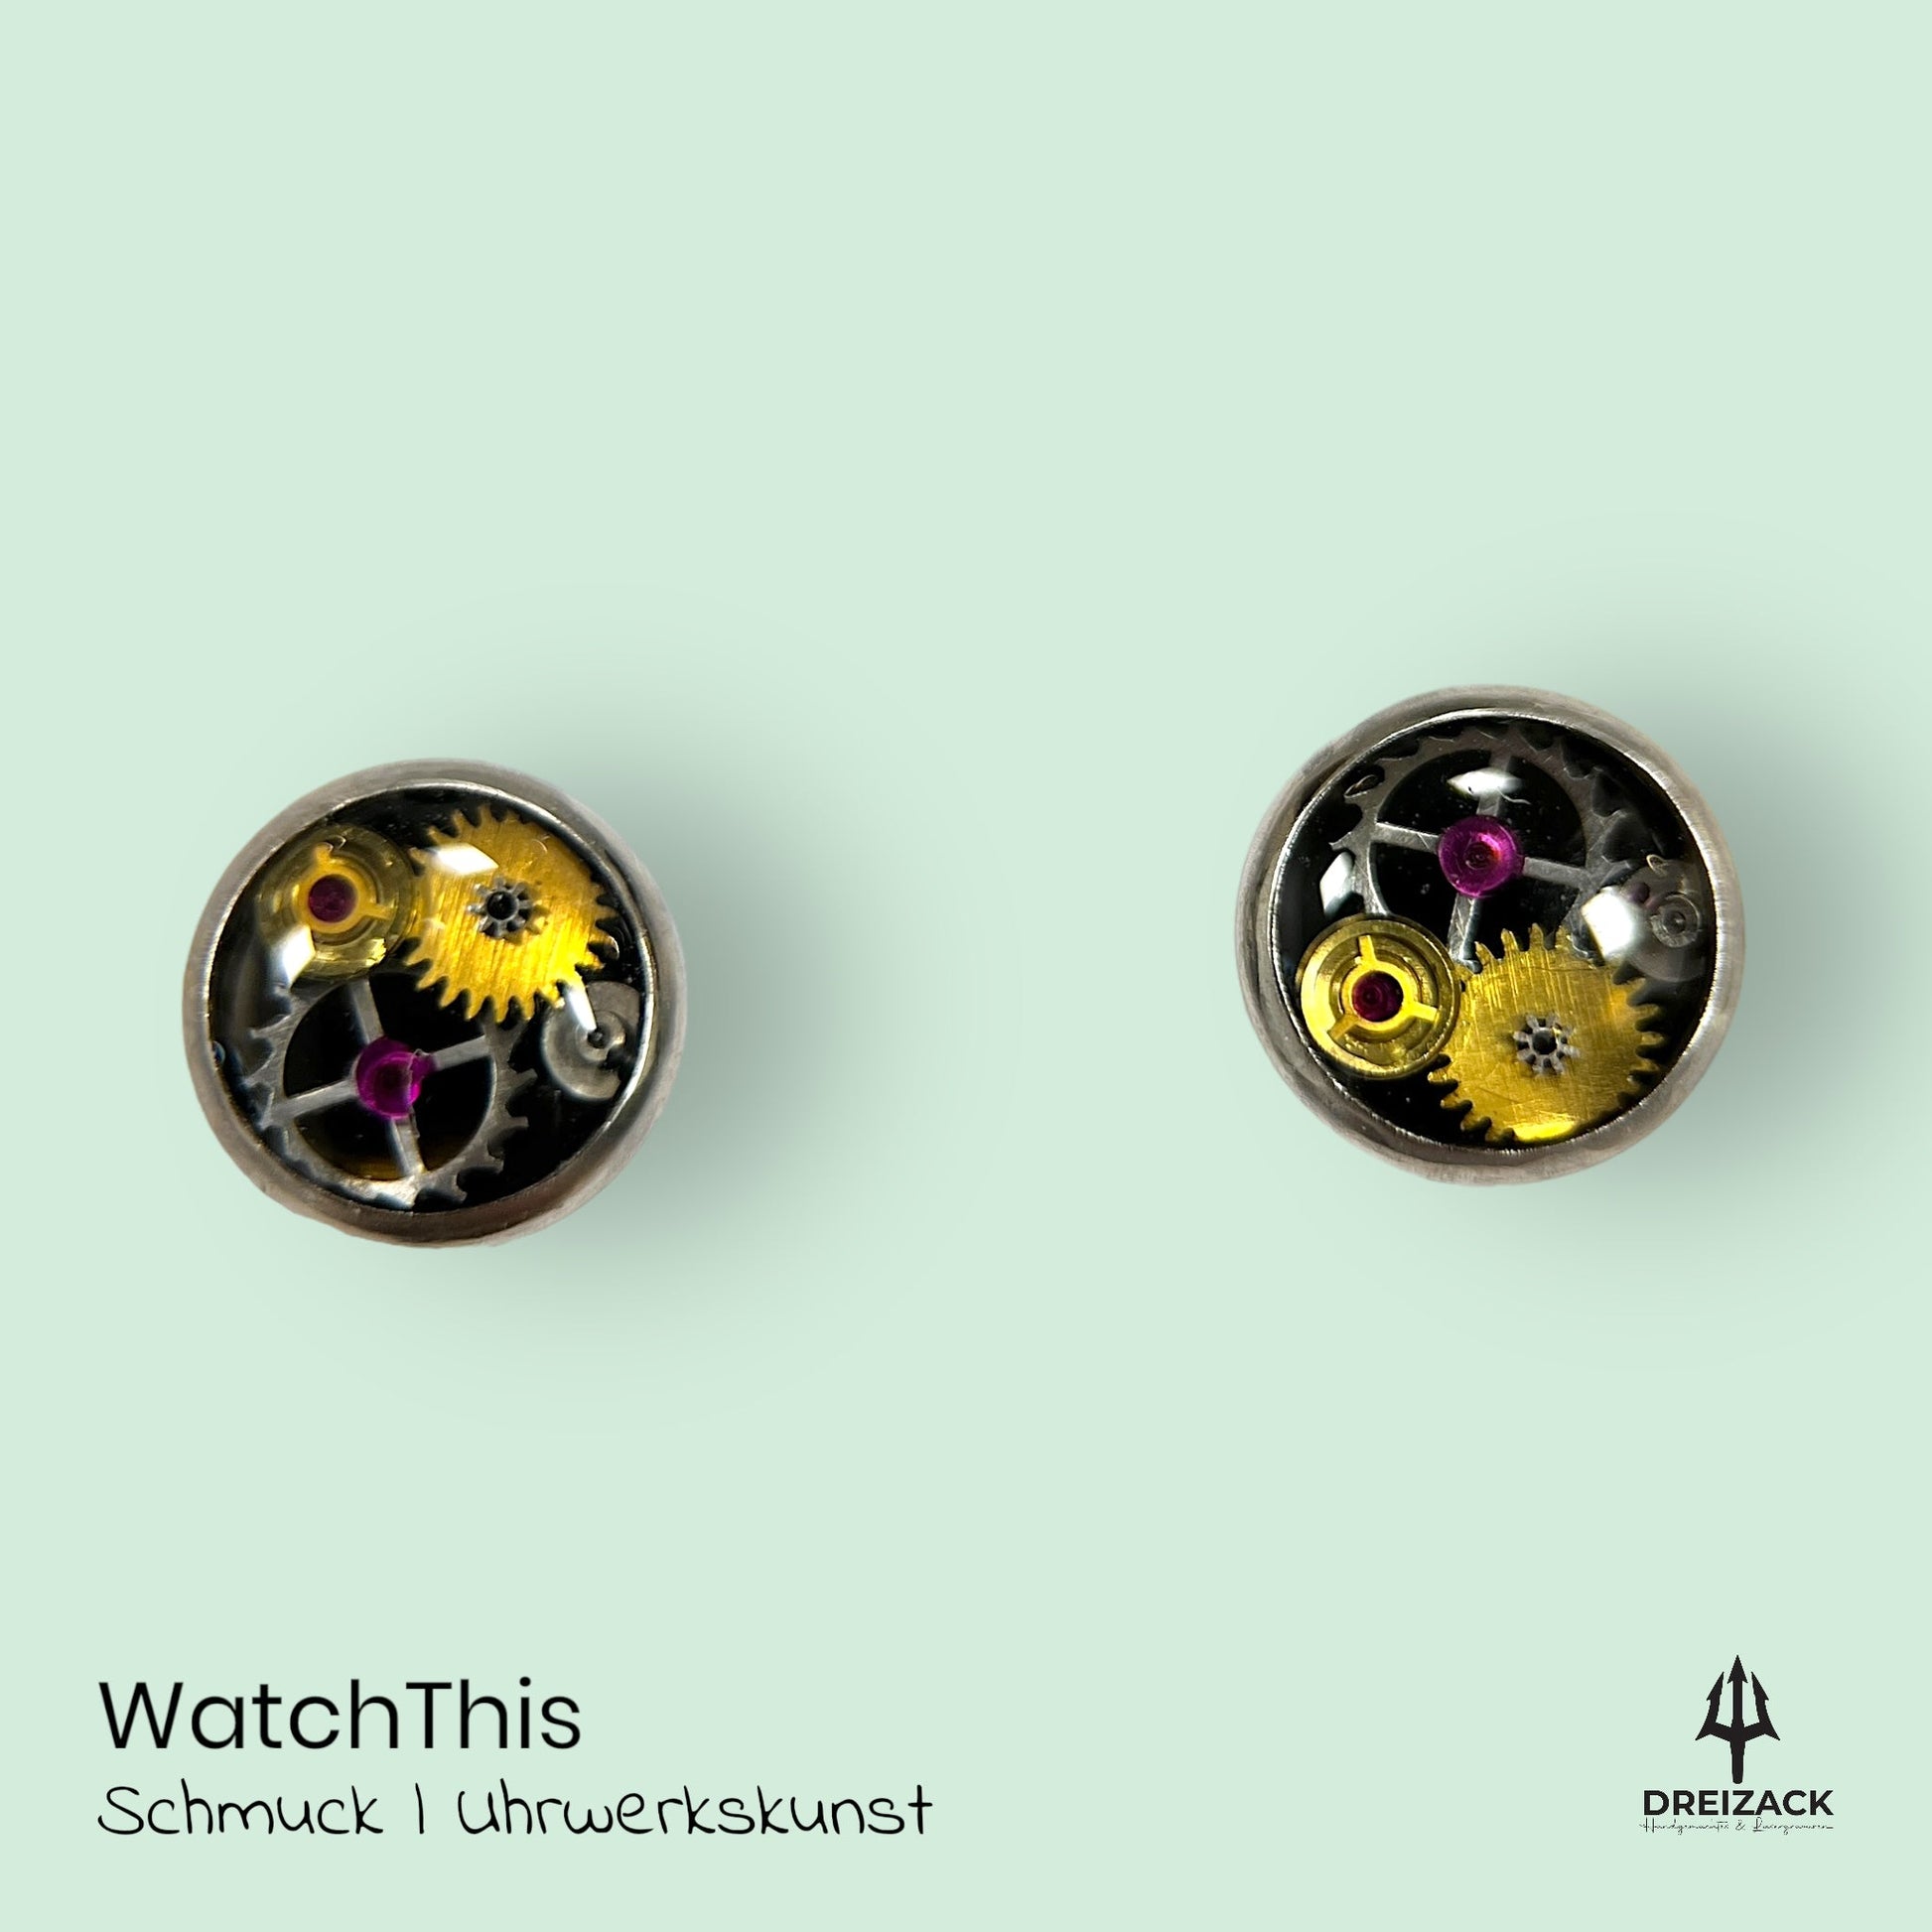 Ohrstecker von WatchThis - Zeitlose Eleganz aus Uhrwerken 6mm | Maeve Schmuck WatchThis oesterreich handgemachte geschenke in wien